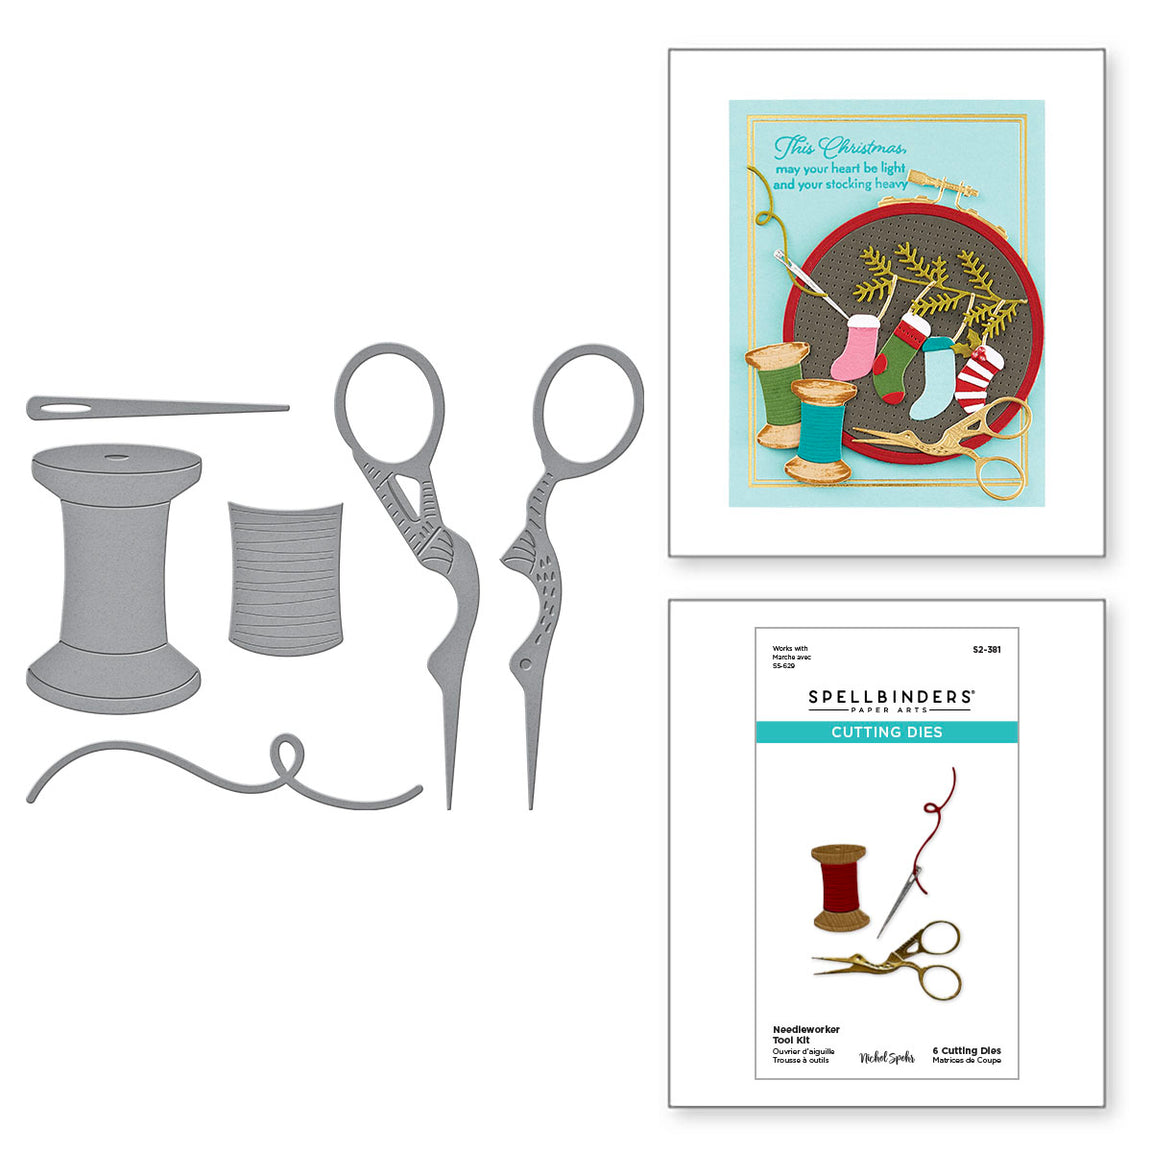 Spellbinders Needleworker Tool Kit Etched Dies - Nichol's Needlework Collection